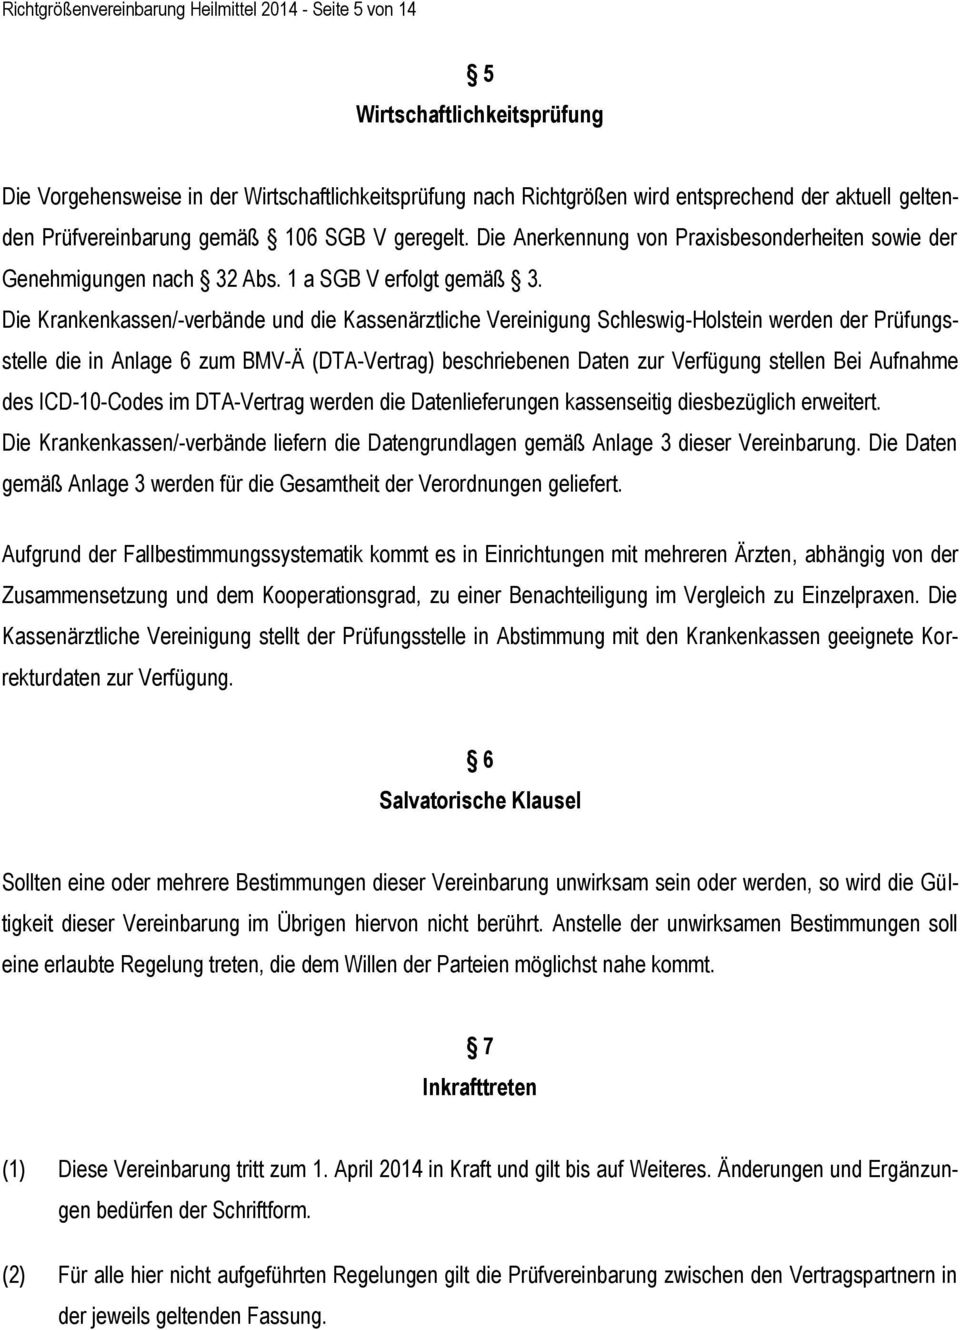 Die Krankenkassen/-verbände und die Kassenärztliche Vereinigung Schleswig-Holstein werden der Prüfungsstelle die in Anlage 6 zum BMV-Ä (DTA-Vertrag) beschriebenen Daten zur Verfügung stellen Bei